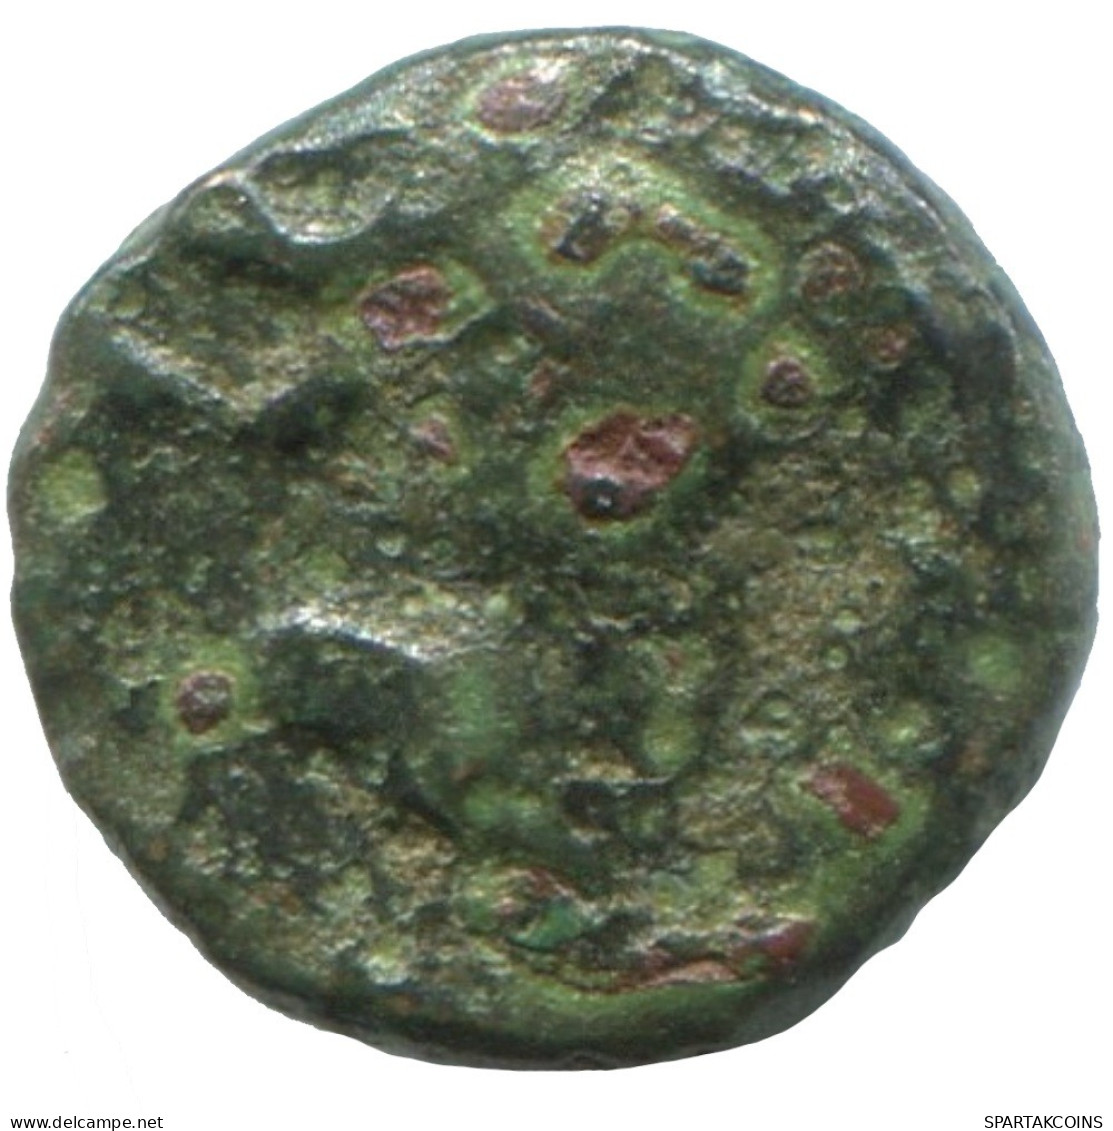 Ancient Authentic GREEK Coin 0.9g/9mm #SAV1348.11.U.A - Griechische Münzen